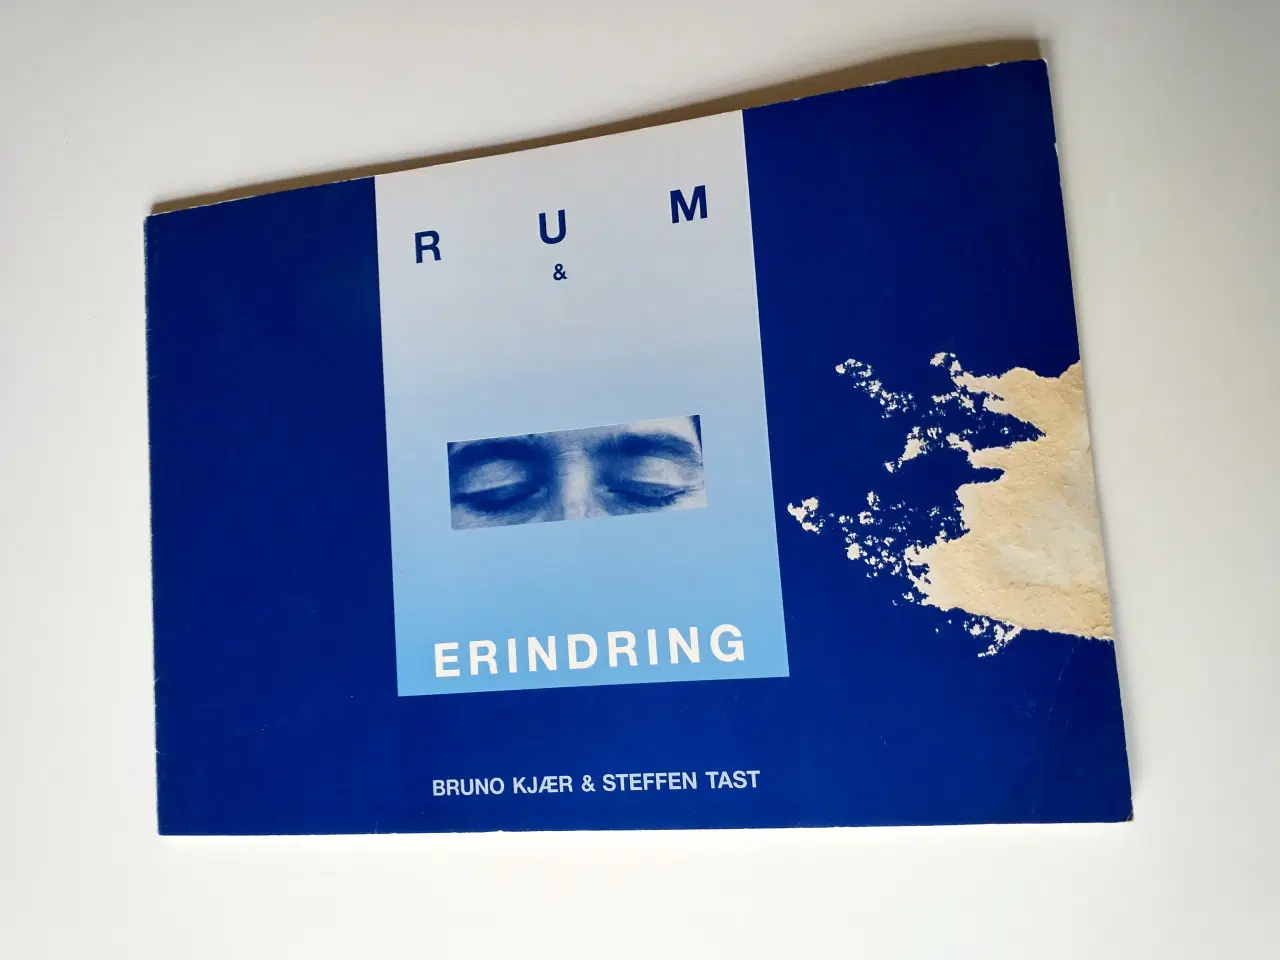 Billede 1 - Rum & erindring. Af Bruno Kjær & Steffensen Tast